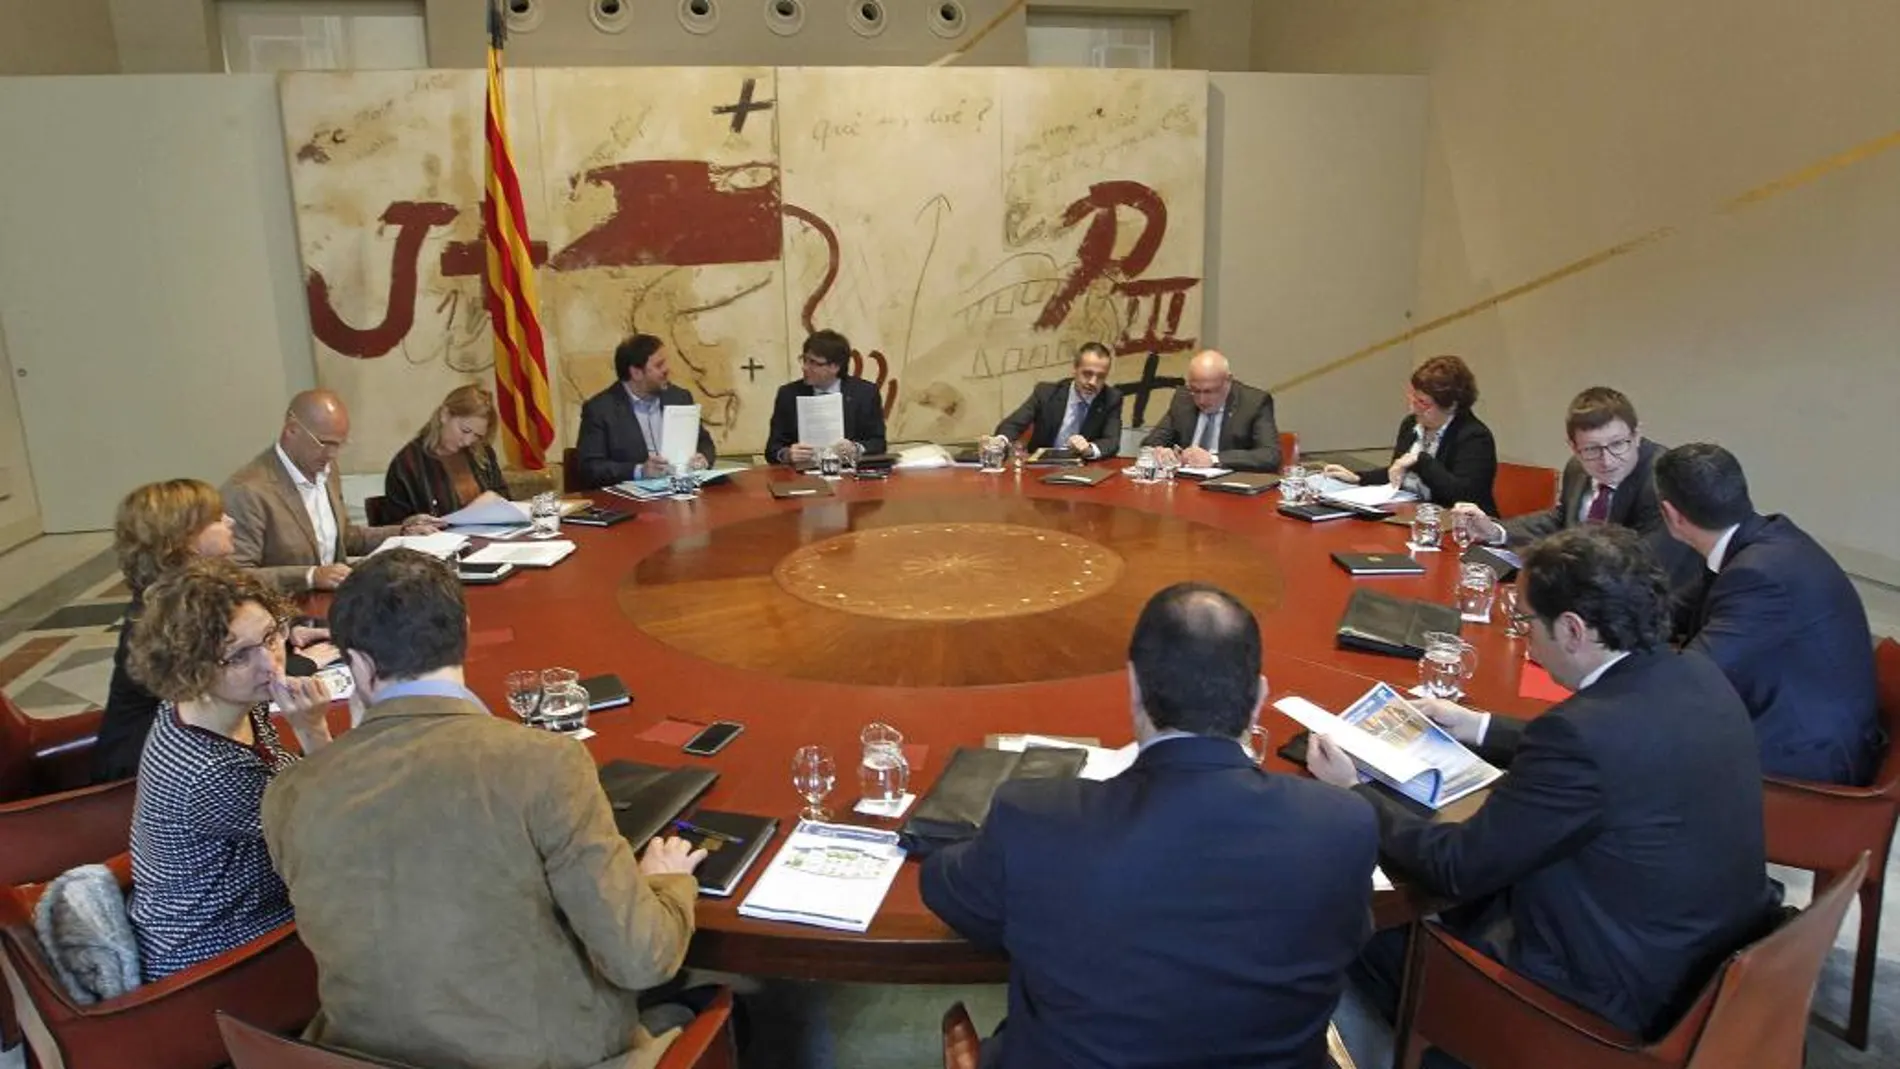 El presidente de la Generalitat, Carles Puigdemont, junto a los consellers, al inicio de la reunión